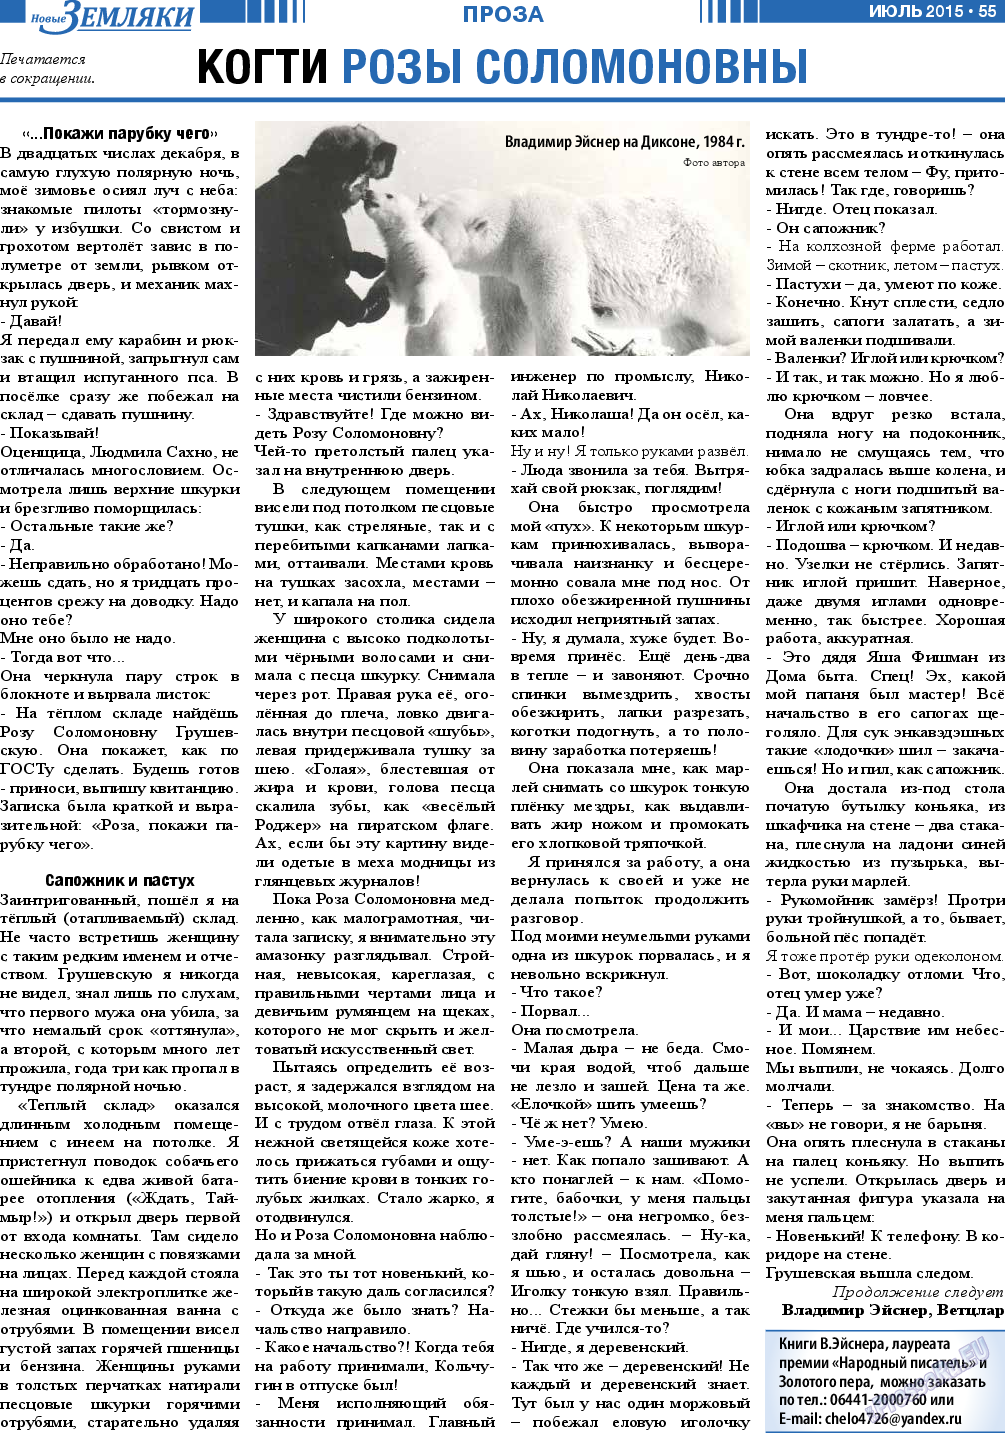 Новые Земляки, газета. 2015 №7 стр.55